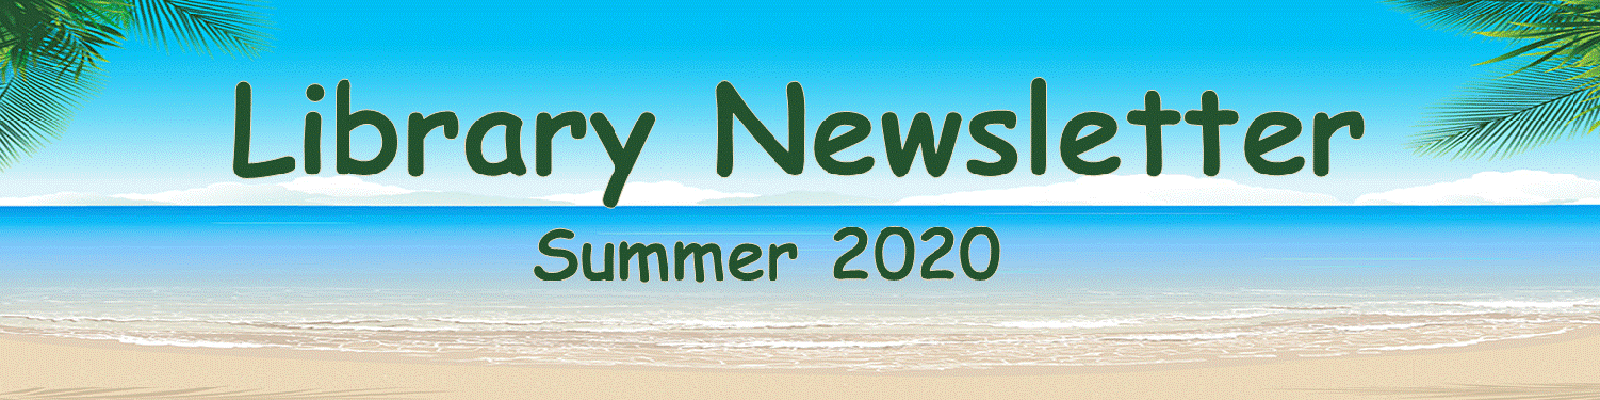 Library Newsletter Summer 2020